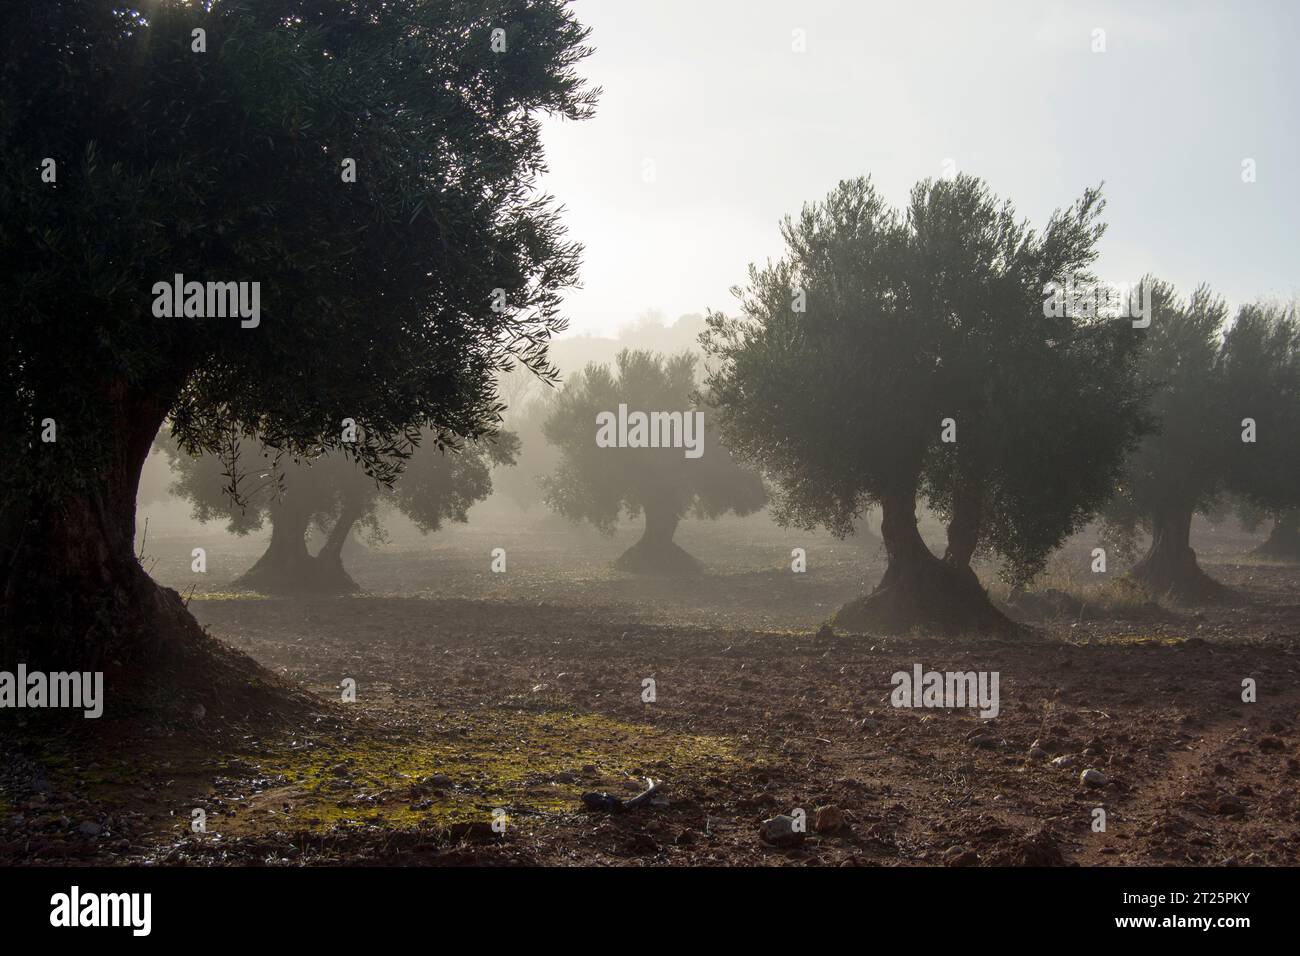 Amanecer con niebla en olivar Stock Photo